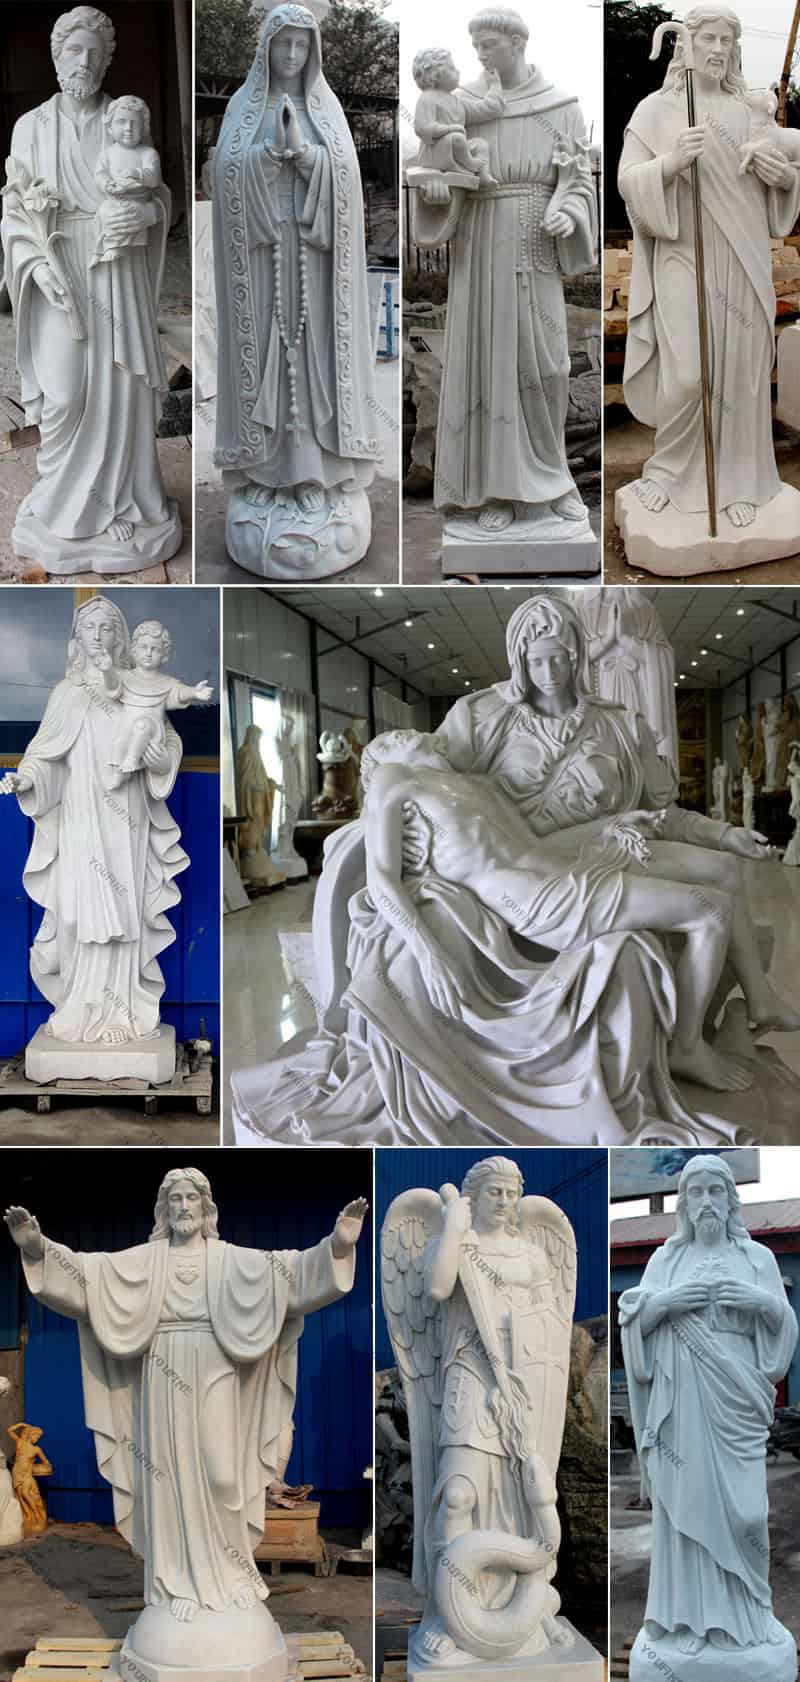 Catholic sculpture